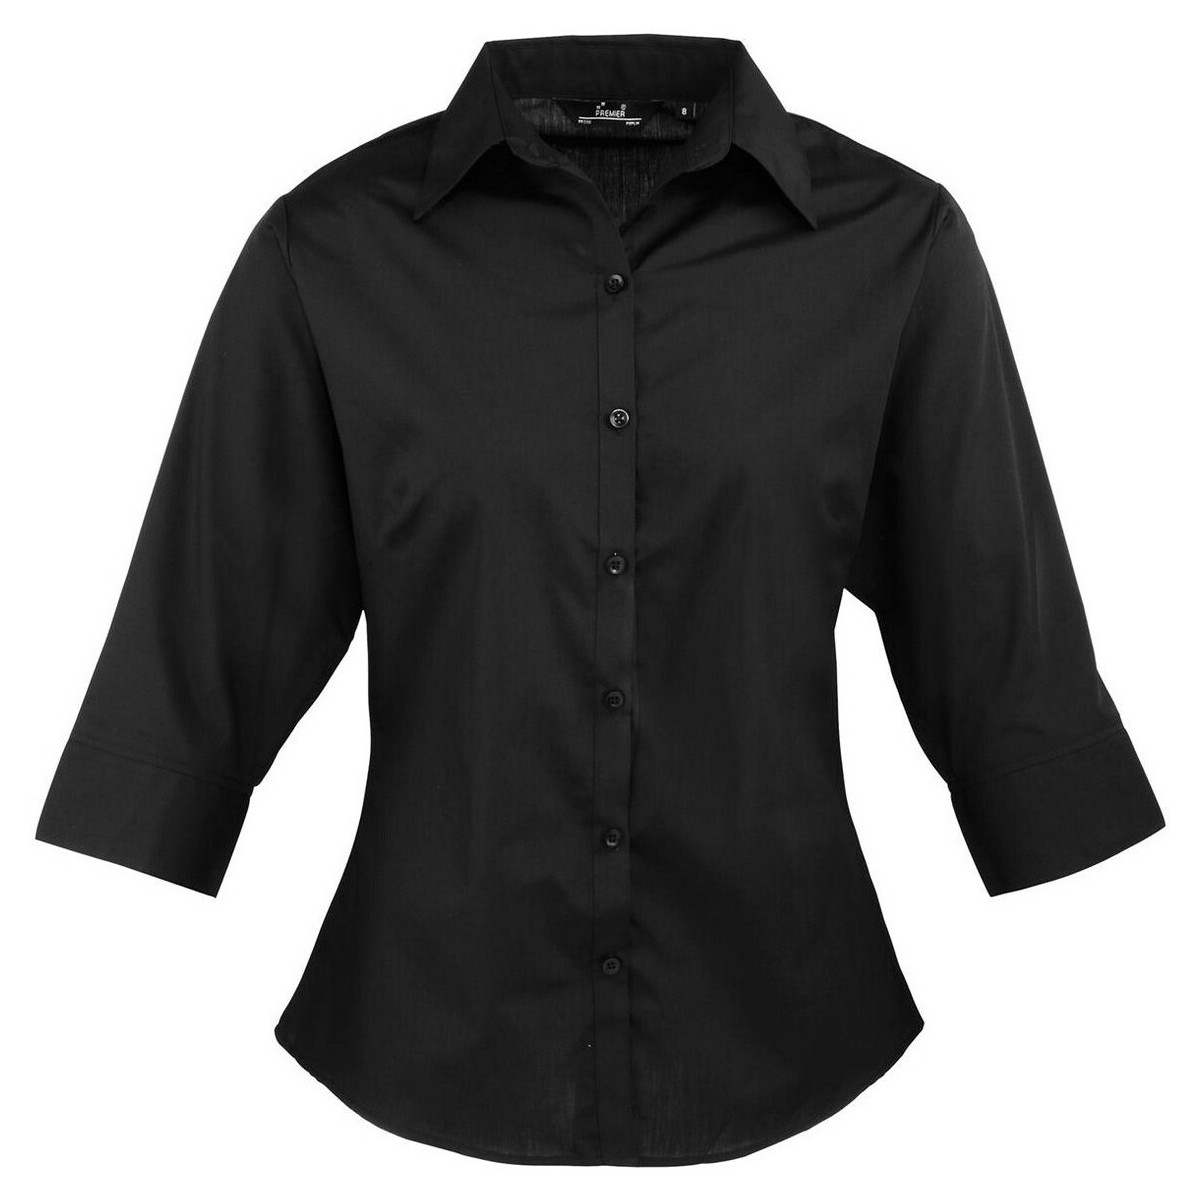 Vêtements Femme Chemises / Chemisiers Premier PR305 Noir